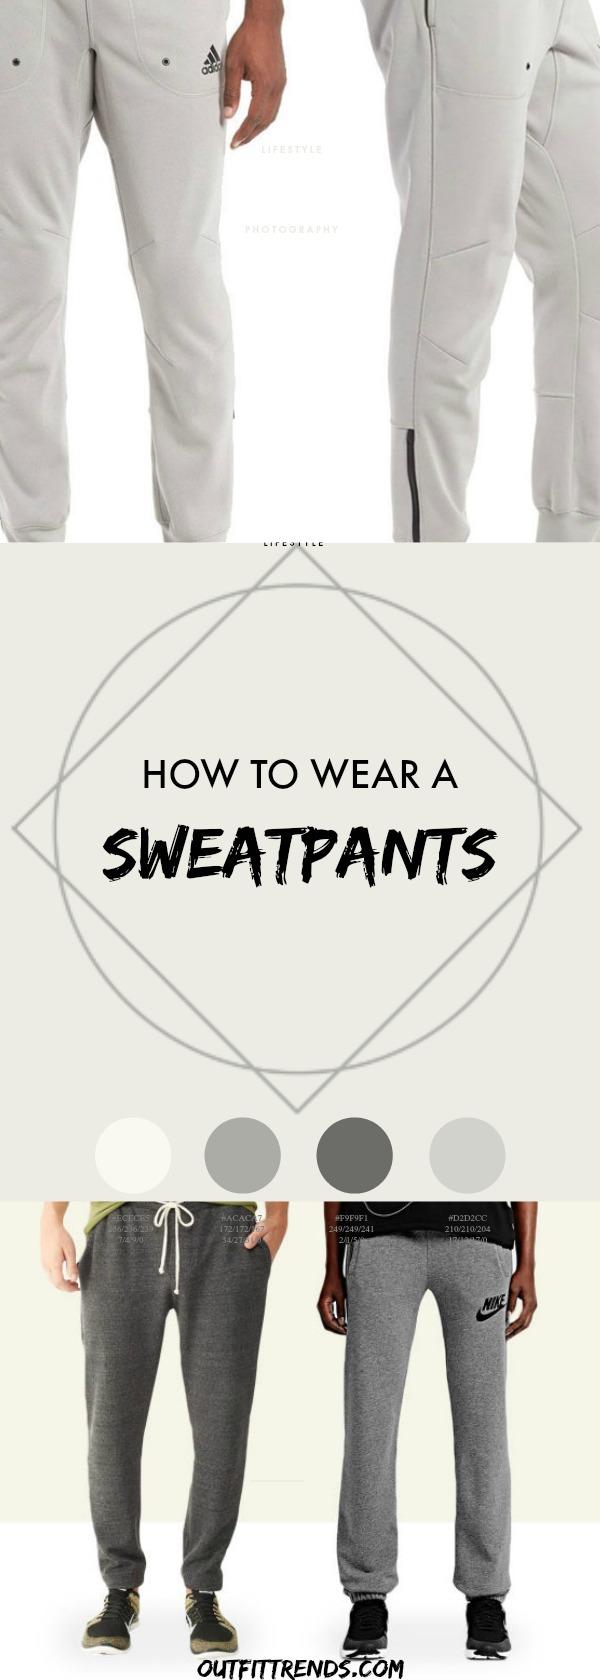 Men's Sweatpants Ideas - 20 Cool Ways to Wear Sweatpants